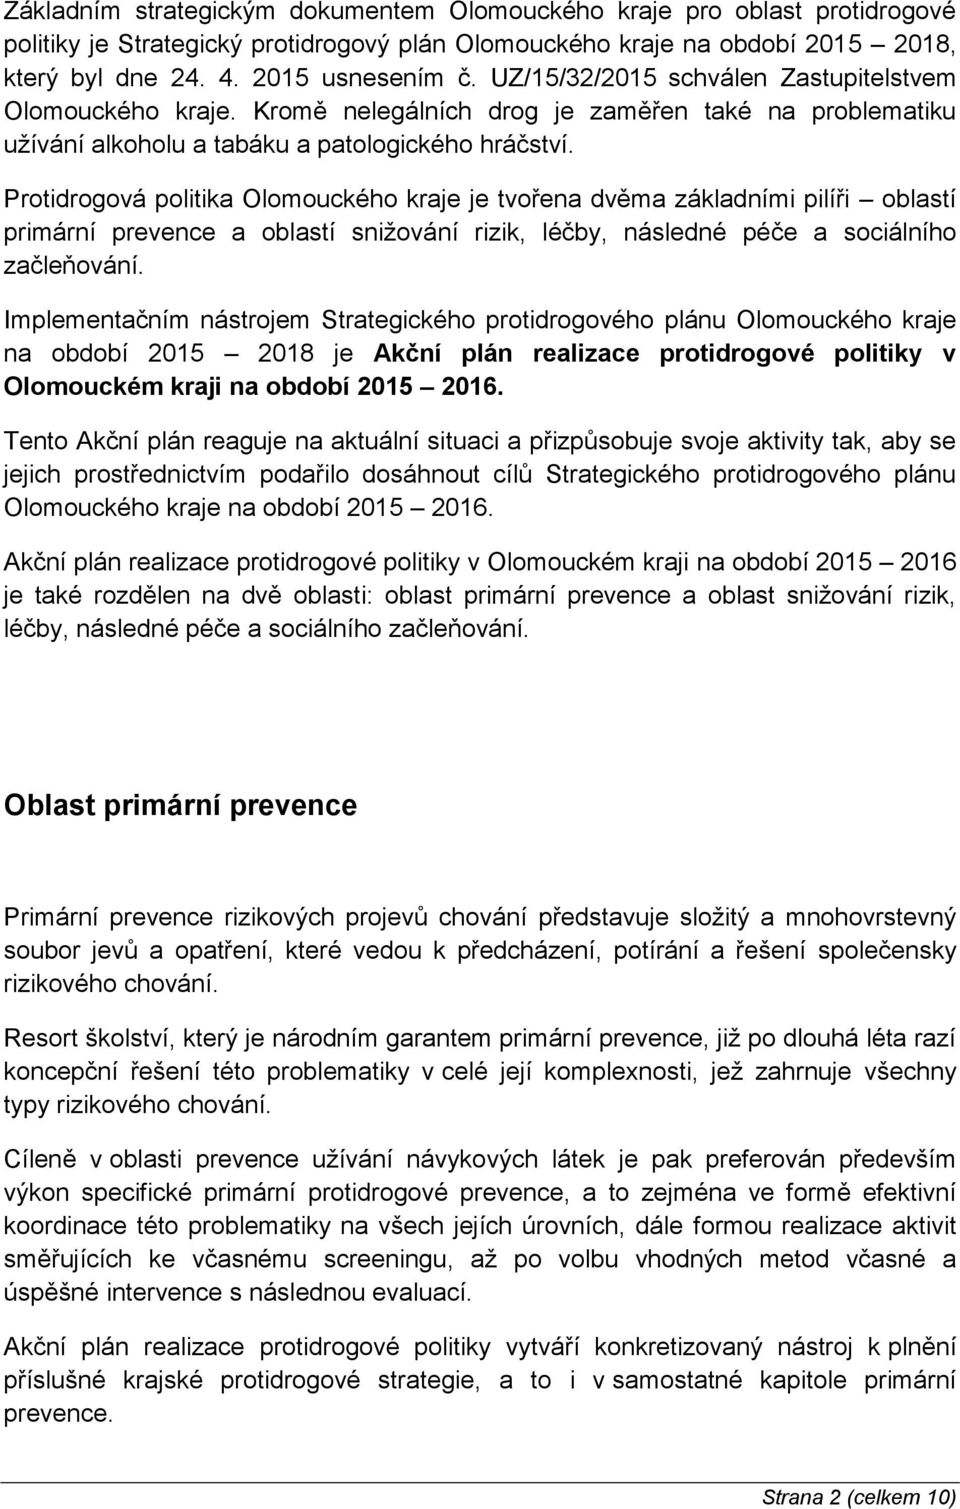 Protidrogová politika Olomouckého kraje je tvořena dvěma základními pilíři oblastí primární prevence a oblastí snižování rizik, léčby, následné péče a sociálního začleňování.